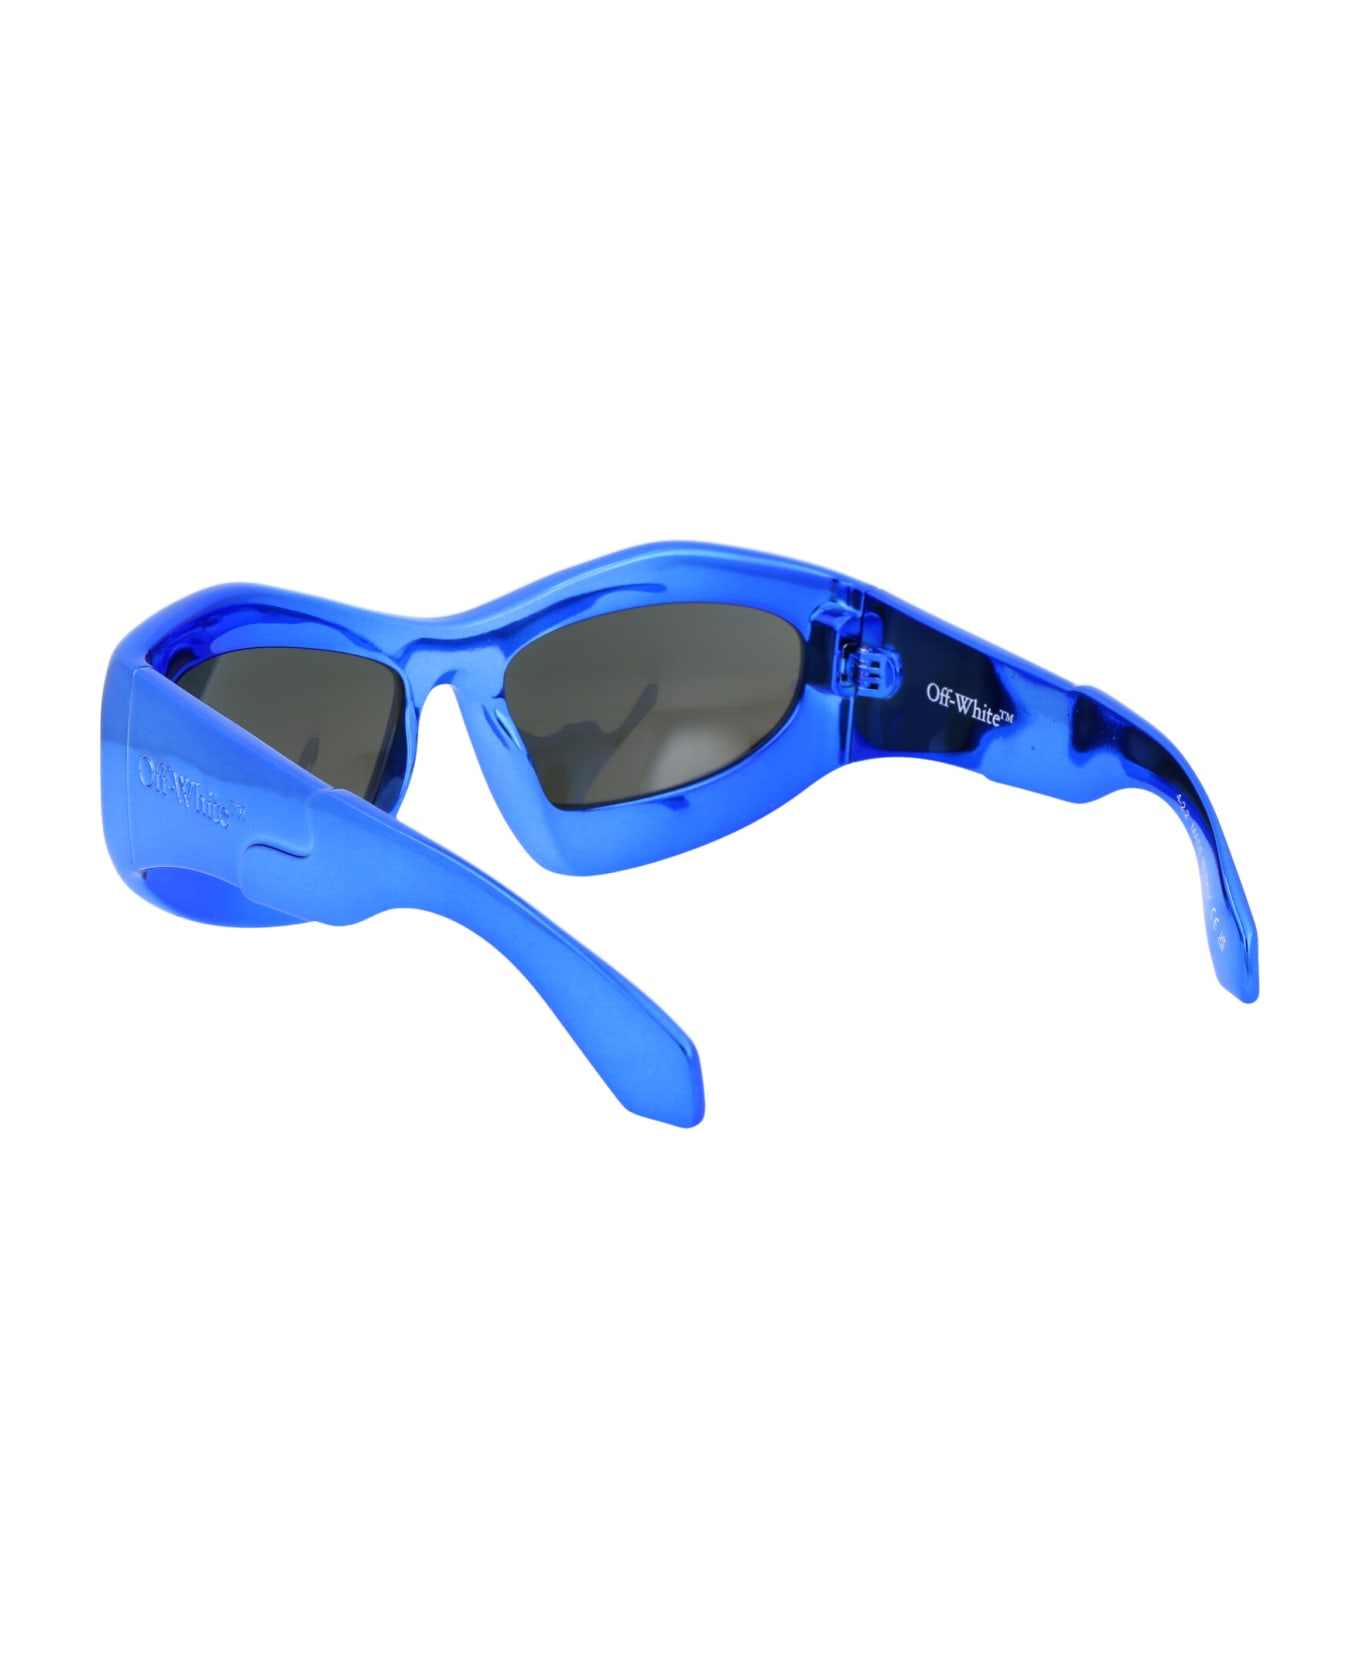 Off-White Katoka Sunglasses - 4545 MIRROR BLUE